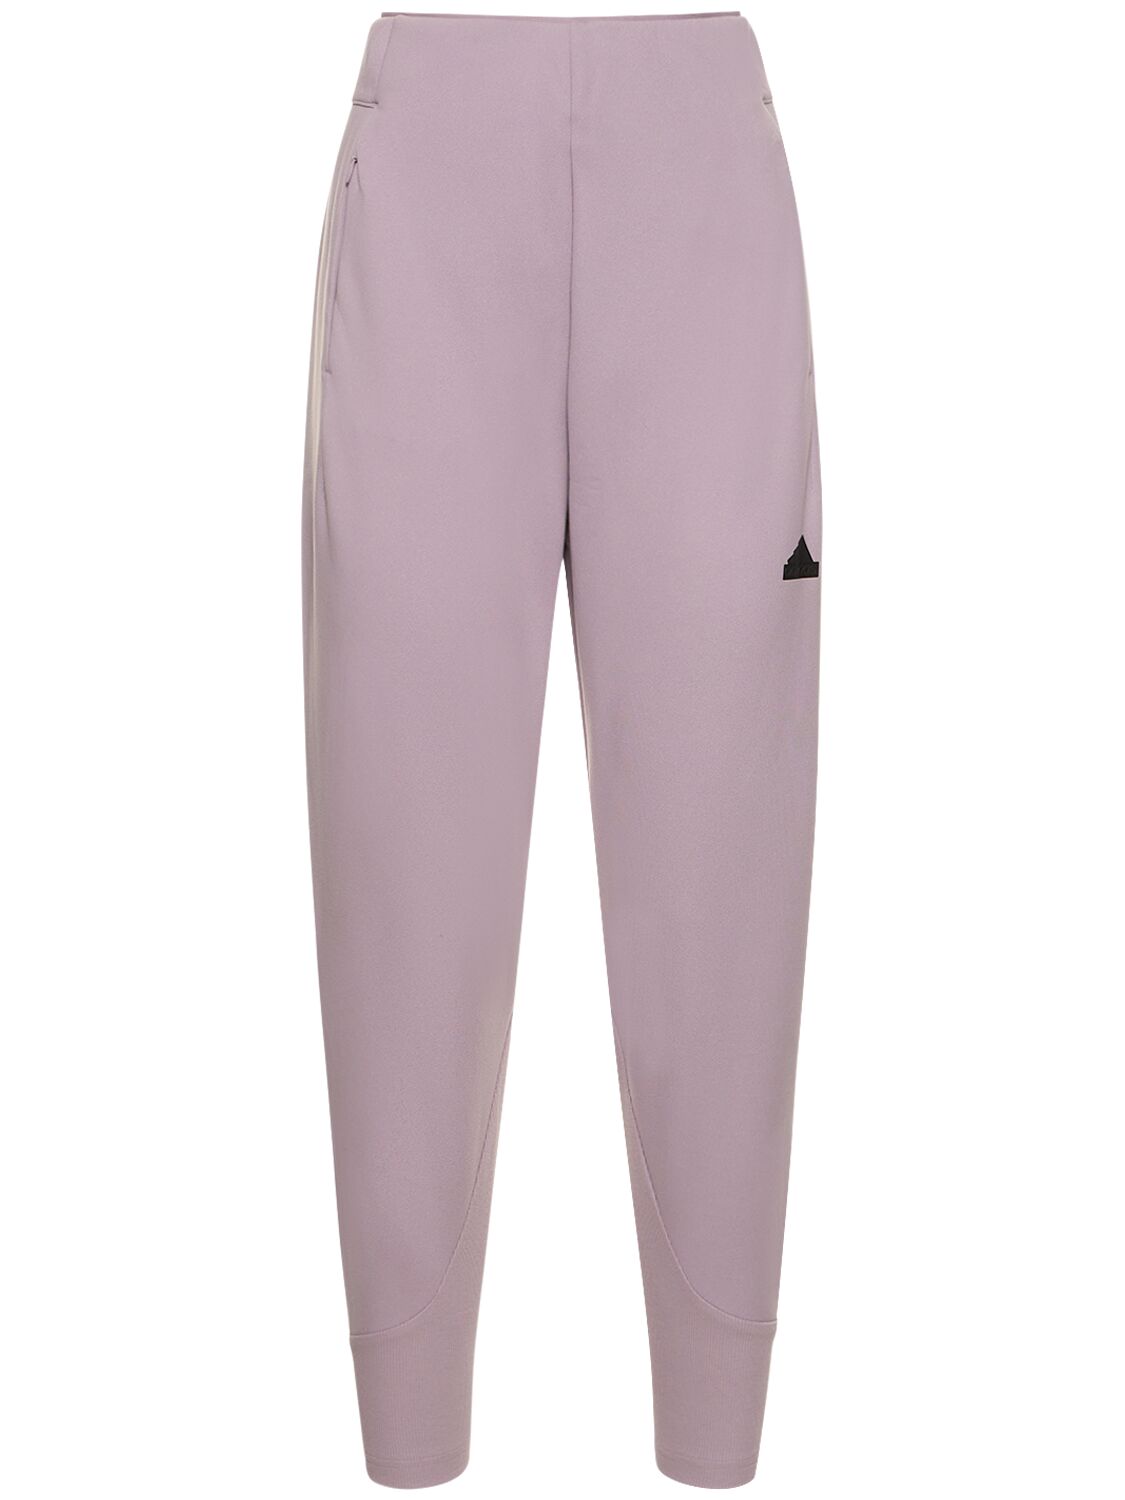 Adidas Originals Zone裤子 In Pink